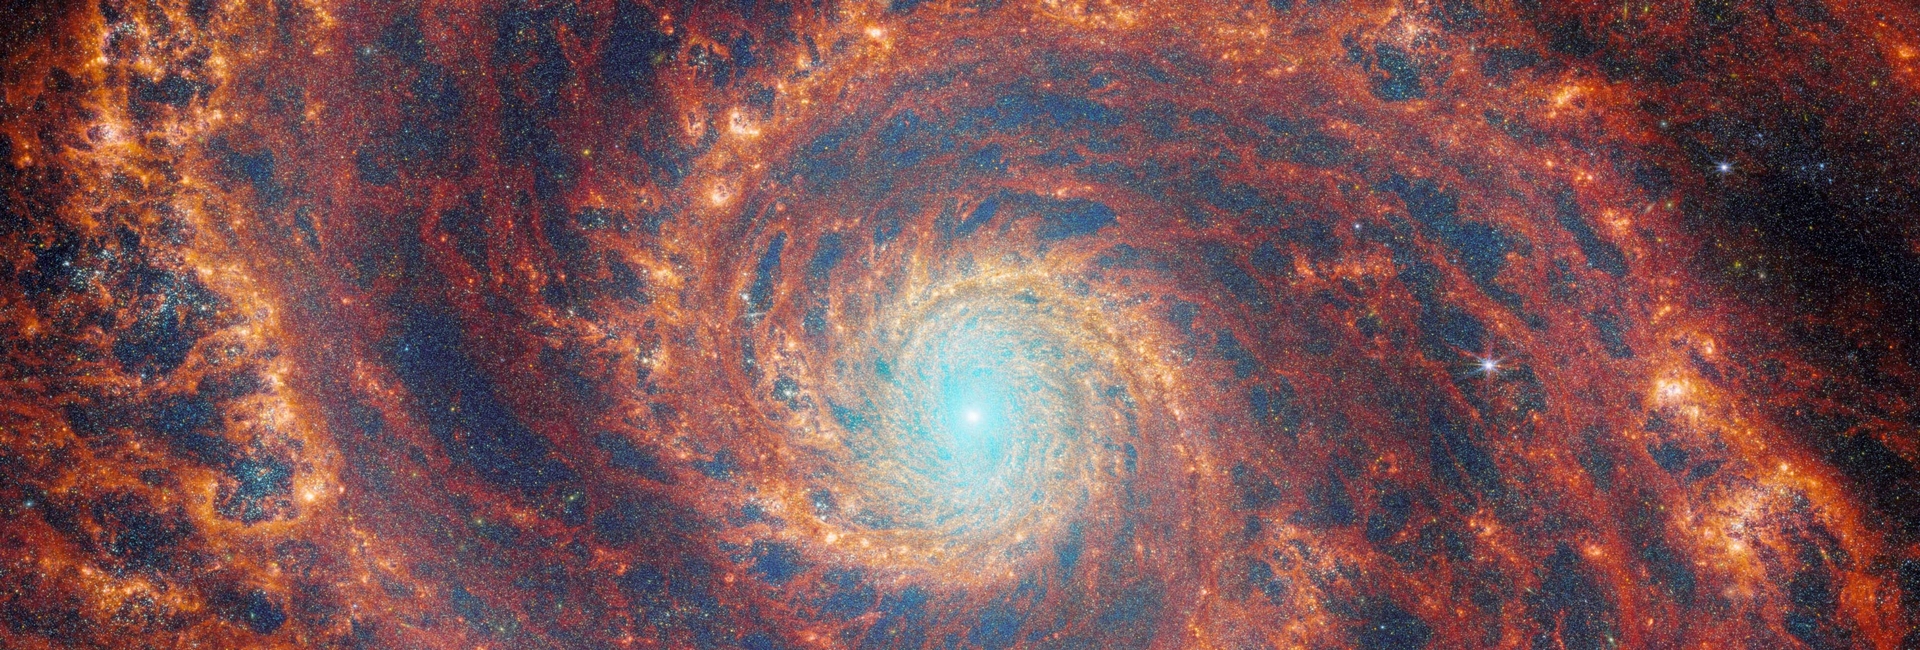 韋伯太空望遠鏡所拍攝渦狀星系的合成影像。圖片來源：NASA / ESA / CSA / Webb / A. Adamo, Stockholm University / FEAST JWST Team